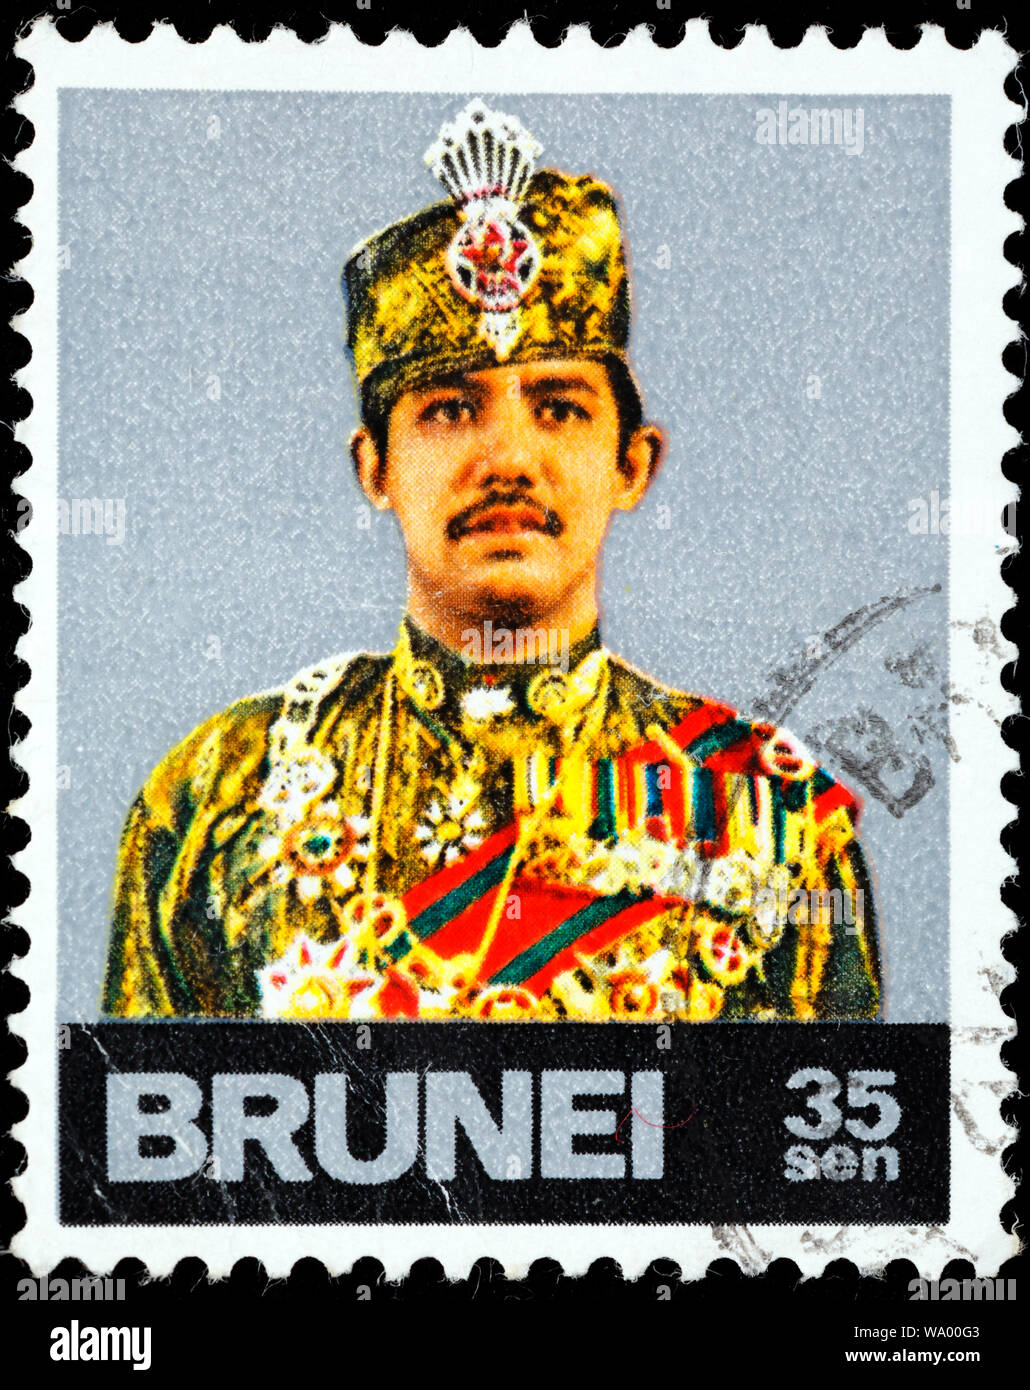 hassanal-bolkiah-sultan-of-brunei-1967-to-present-postage-stamp-brunei-1974-WA00G3.jpg